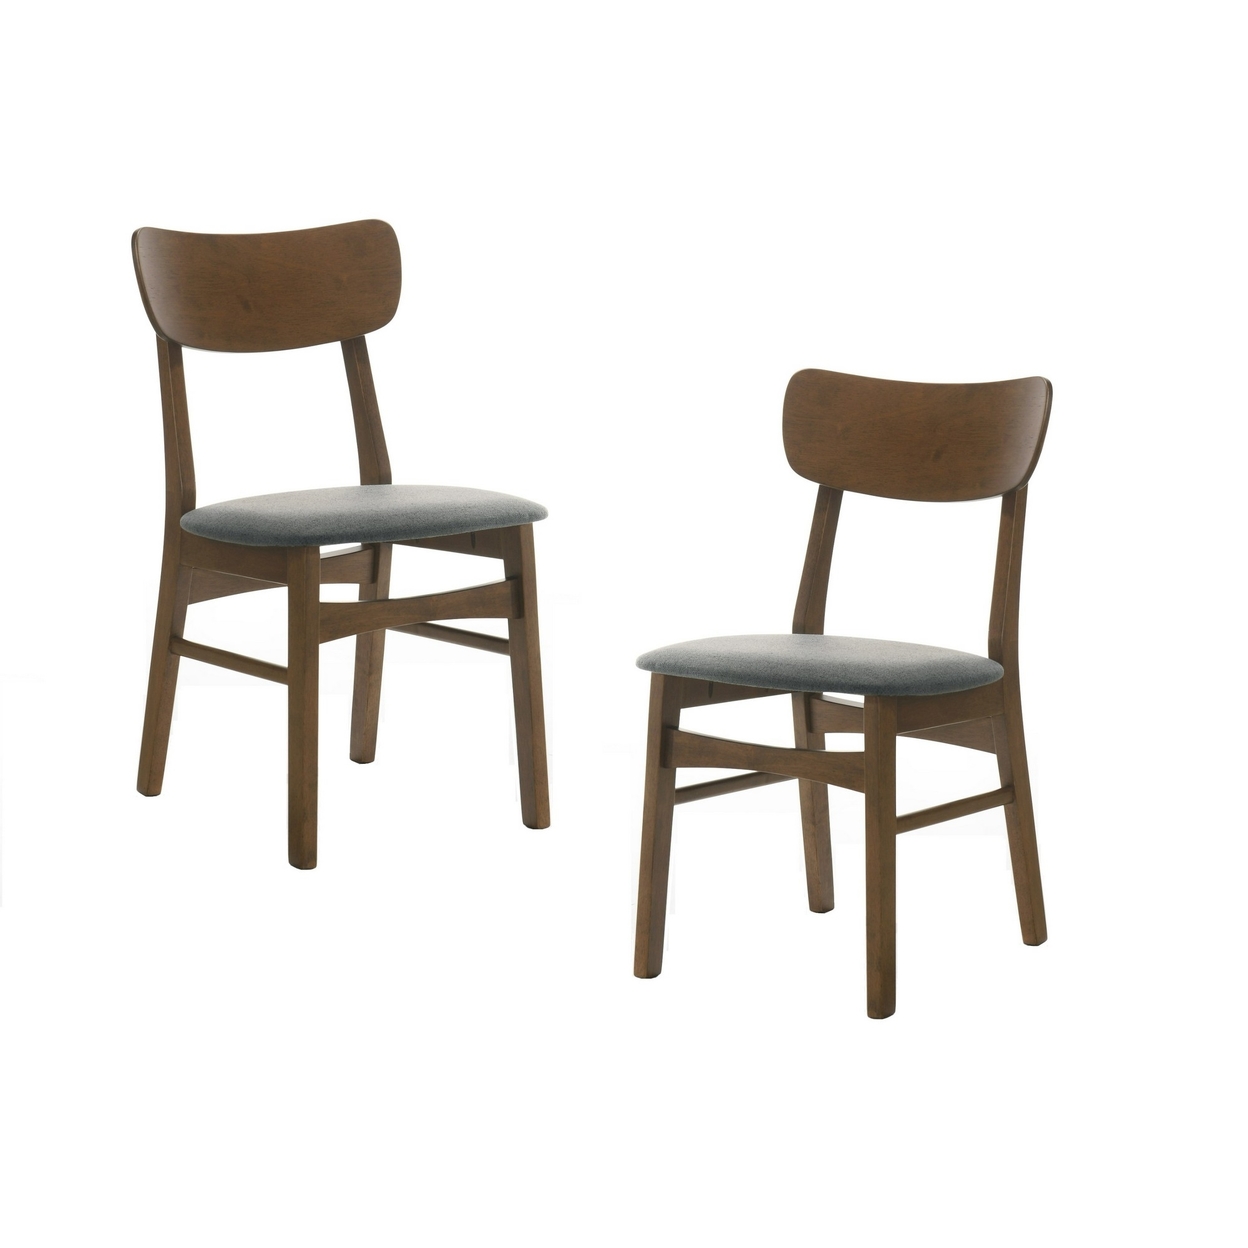 Cid Cyla 18 Inch Dining Chair, Set Of 2, Walnut Wood Frame, Cushioned Seat- Saltoro Sherpi